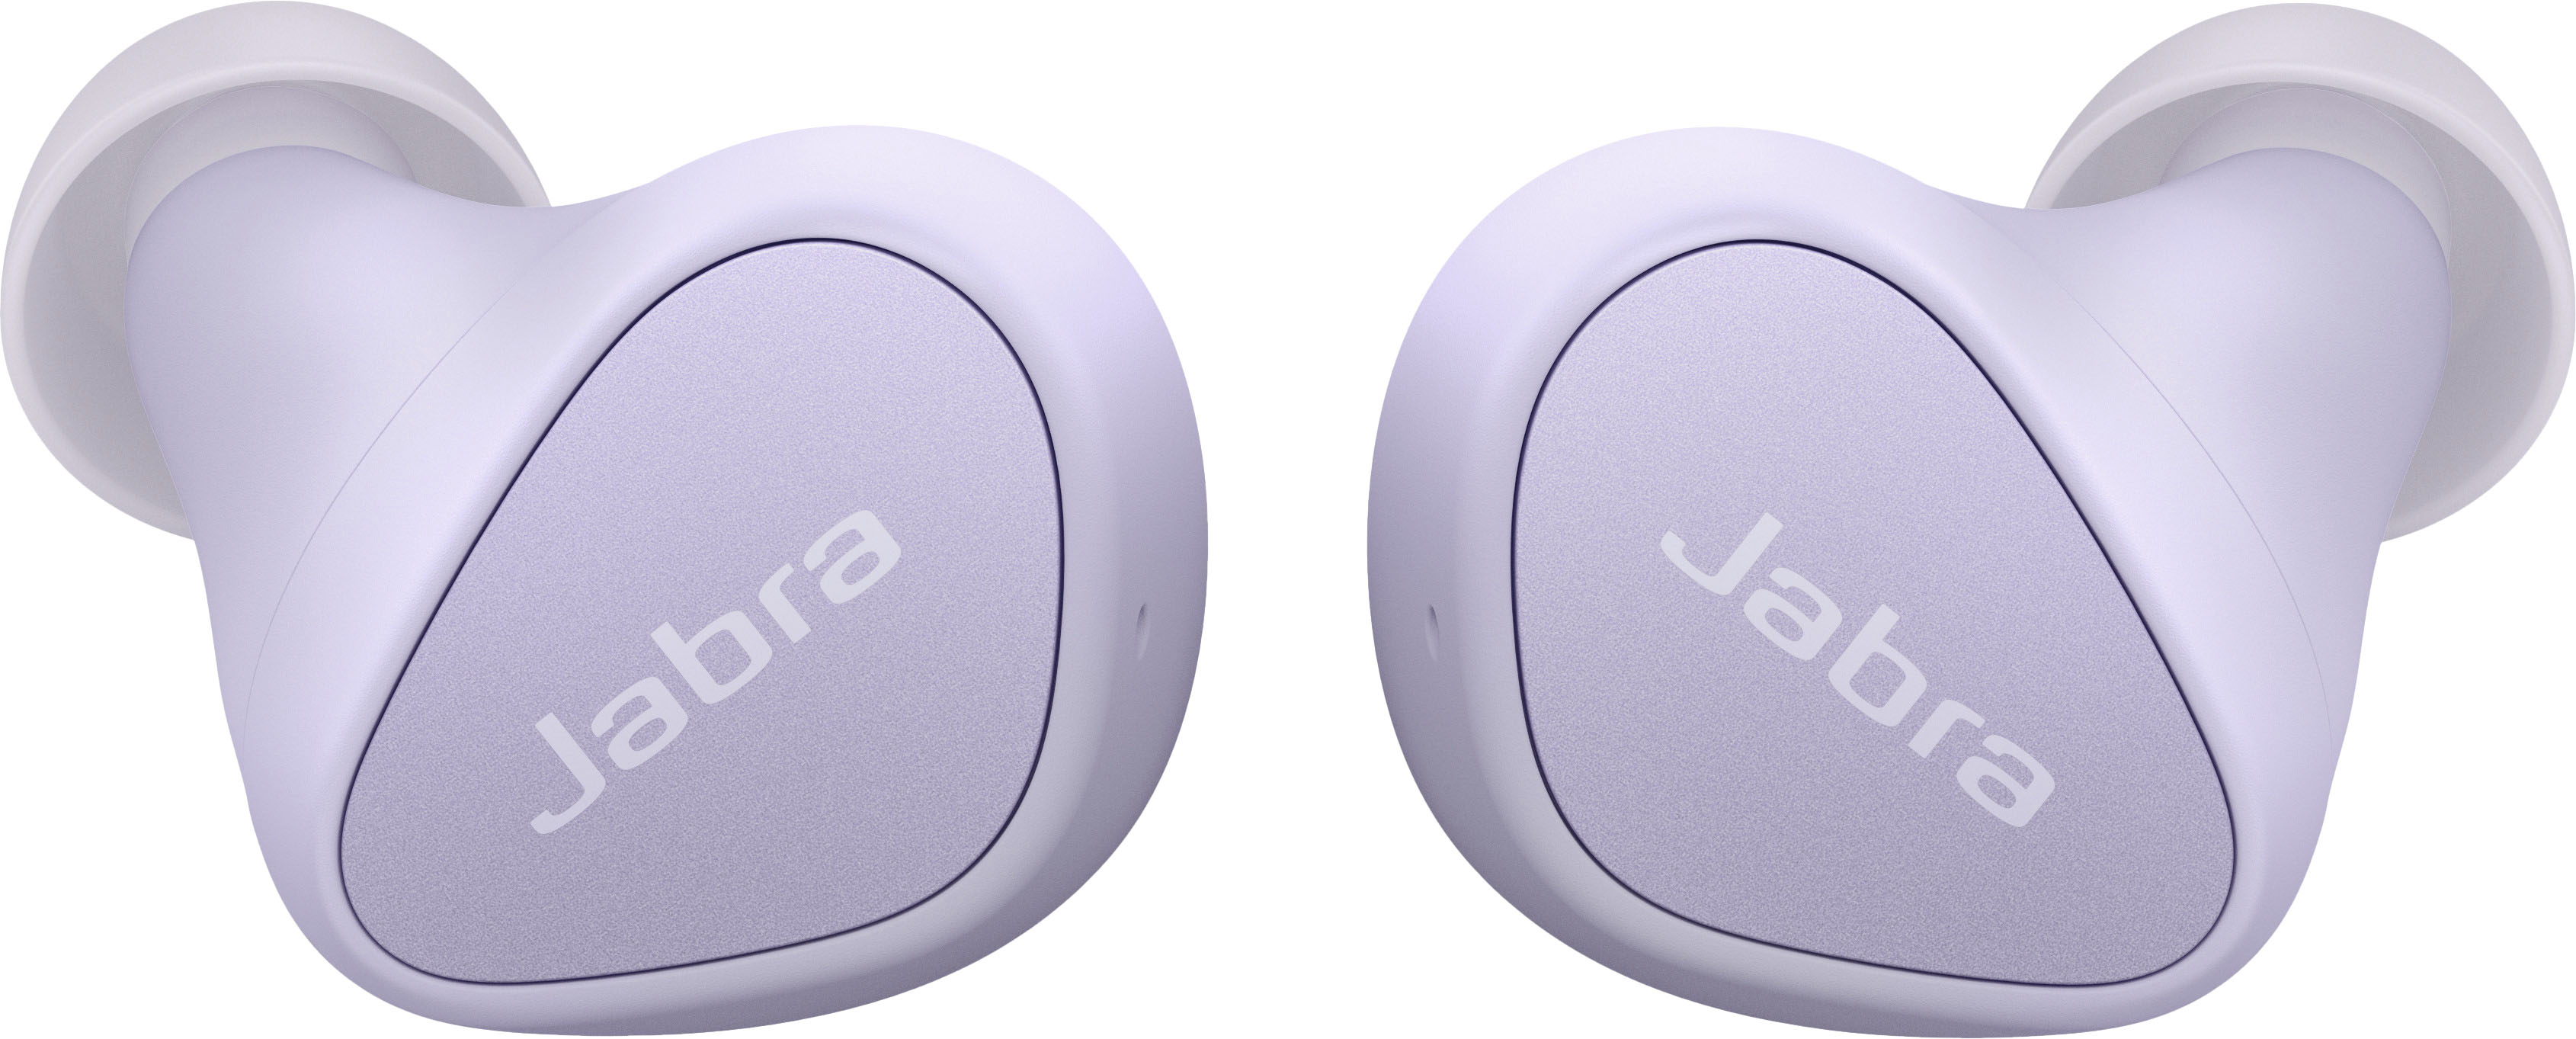 In-Ear Elite Wireless Best Jabra 100-91410002-02 3 True Buy - Lilac Headphones